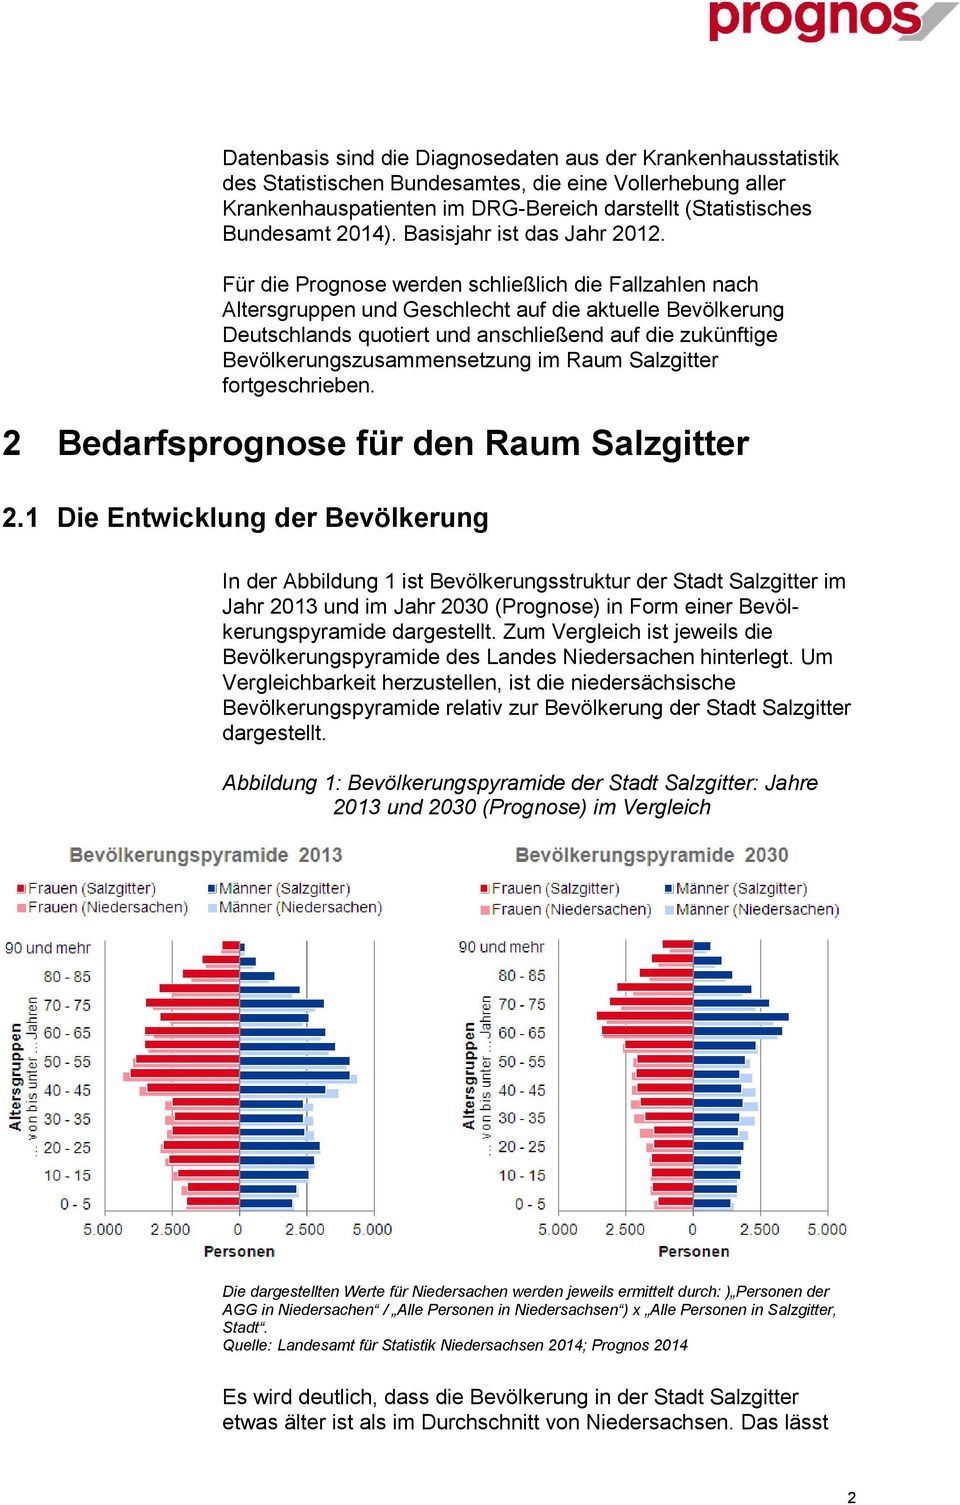 Für die Prognose werden schließlich die Fallzahlen nach Altersgruppen und Geschlecht auf die aktuelle Bevölkerung Deutschlands quotiert und anschließend auf die zukünftige Bevölkerungszusammensetzung